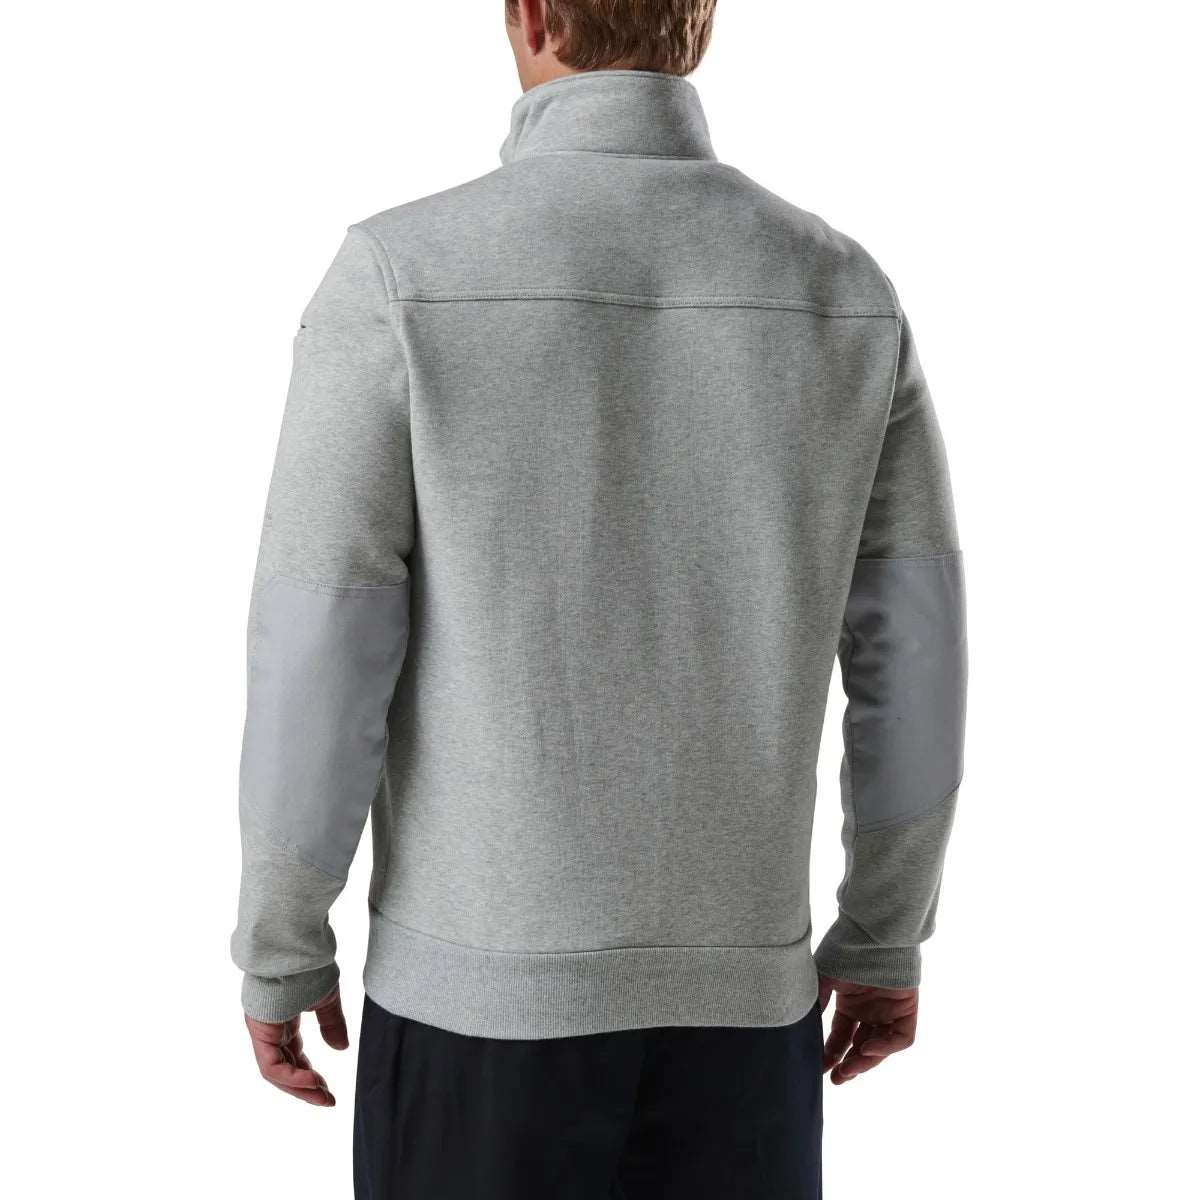 Outerwear - 5.11 Tactical Job Shirt 1/4 Zip 2.0 - Tall